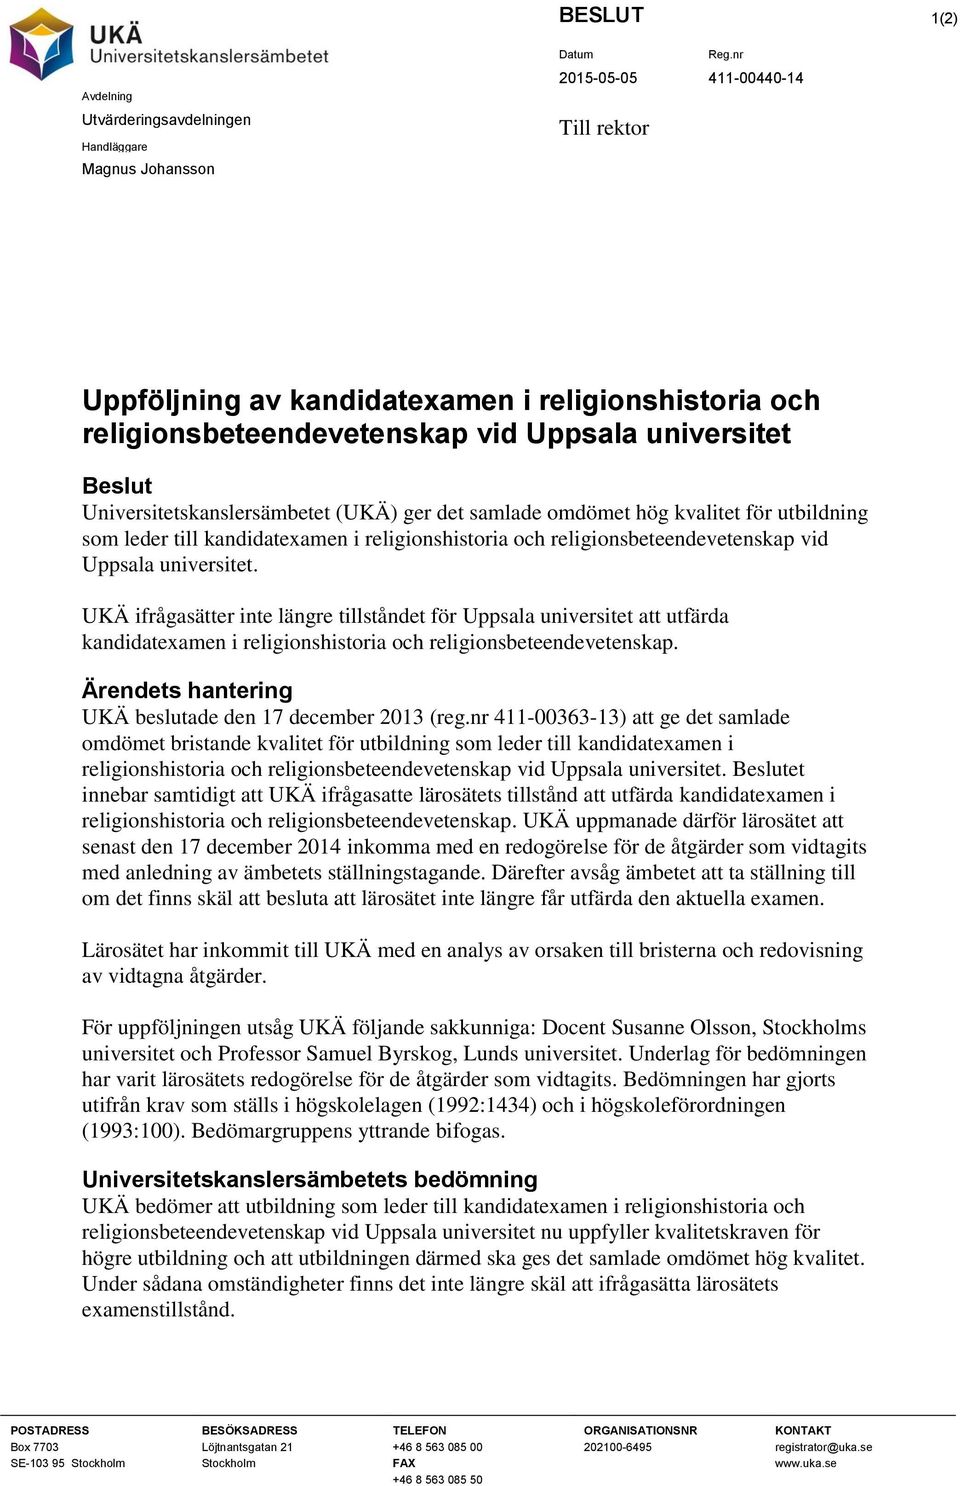 Uppsala universitet. UKÄ ifrågasätter inte längre tillståndet för Uppsala universitet att utfärda kandidatexamen i religionshistoria och religionsbeteendevetenskap.